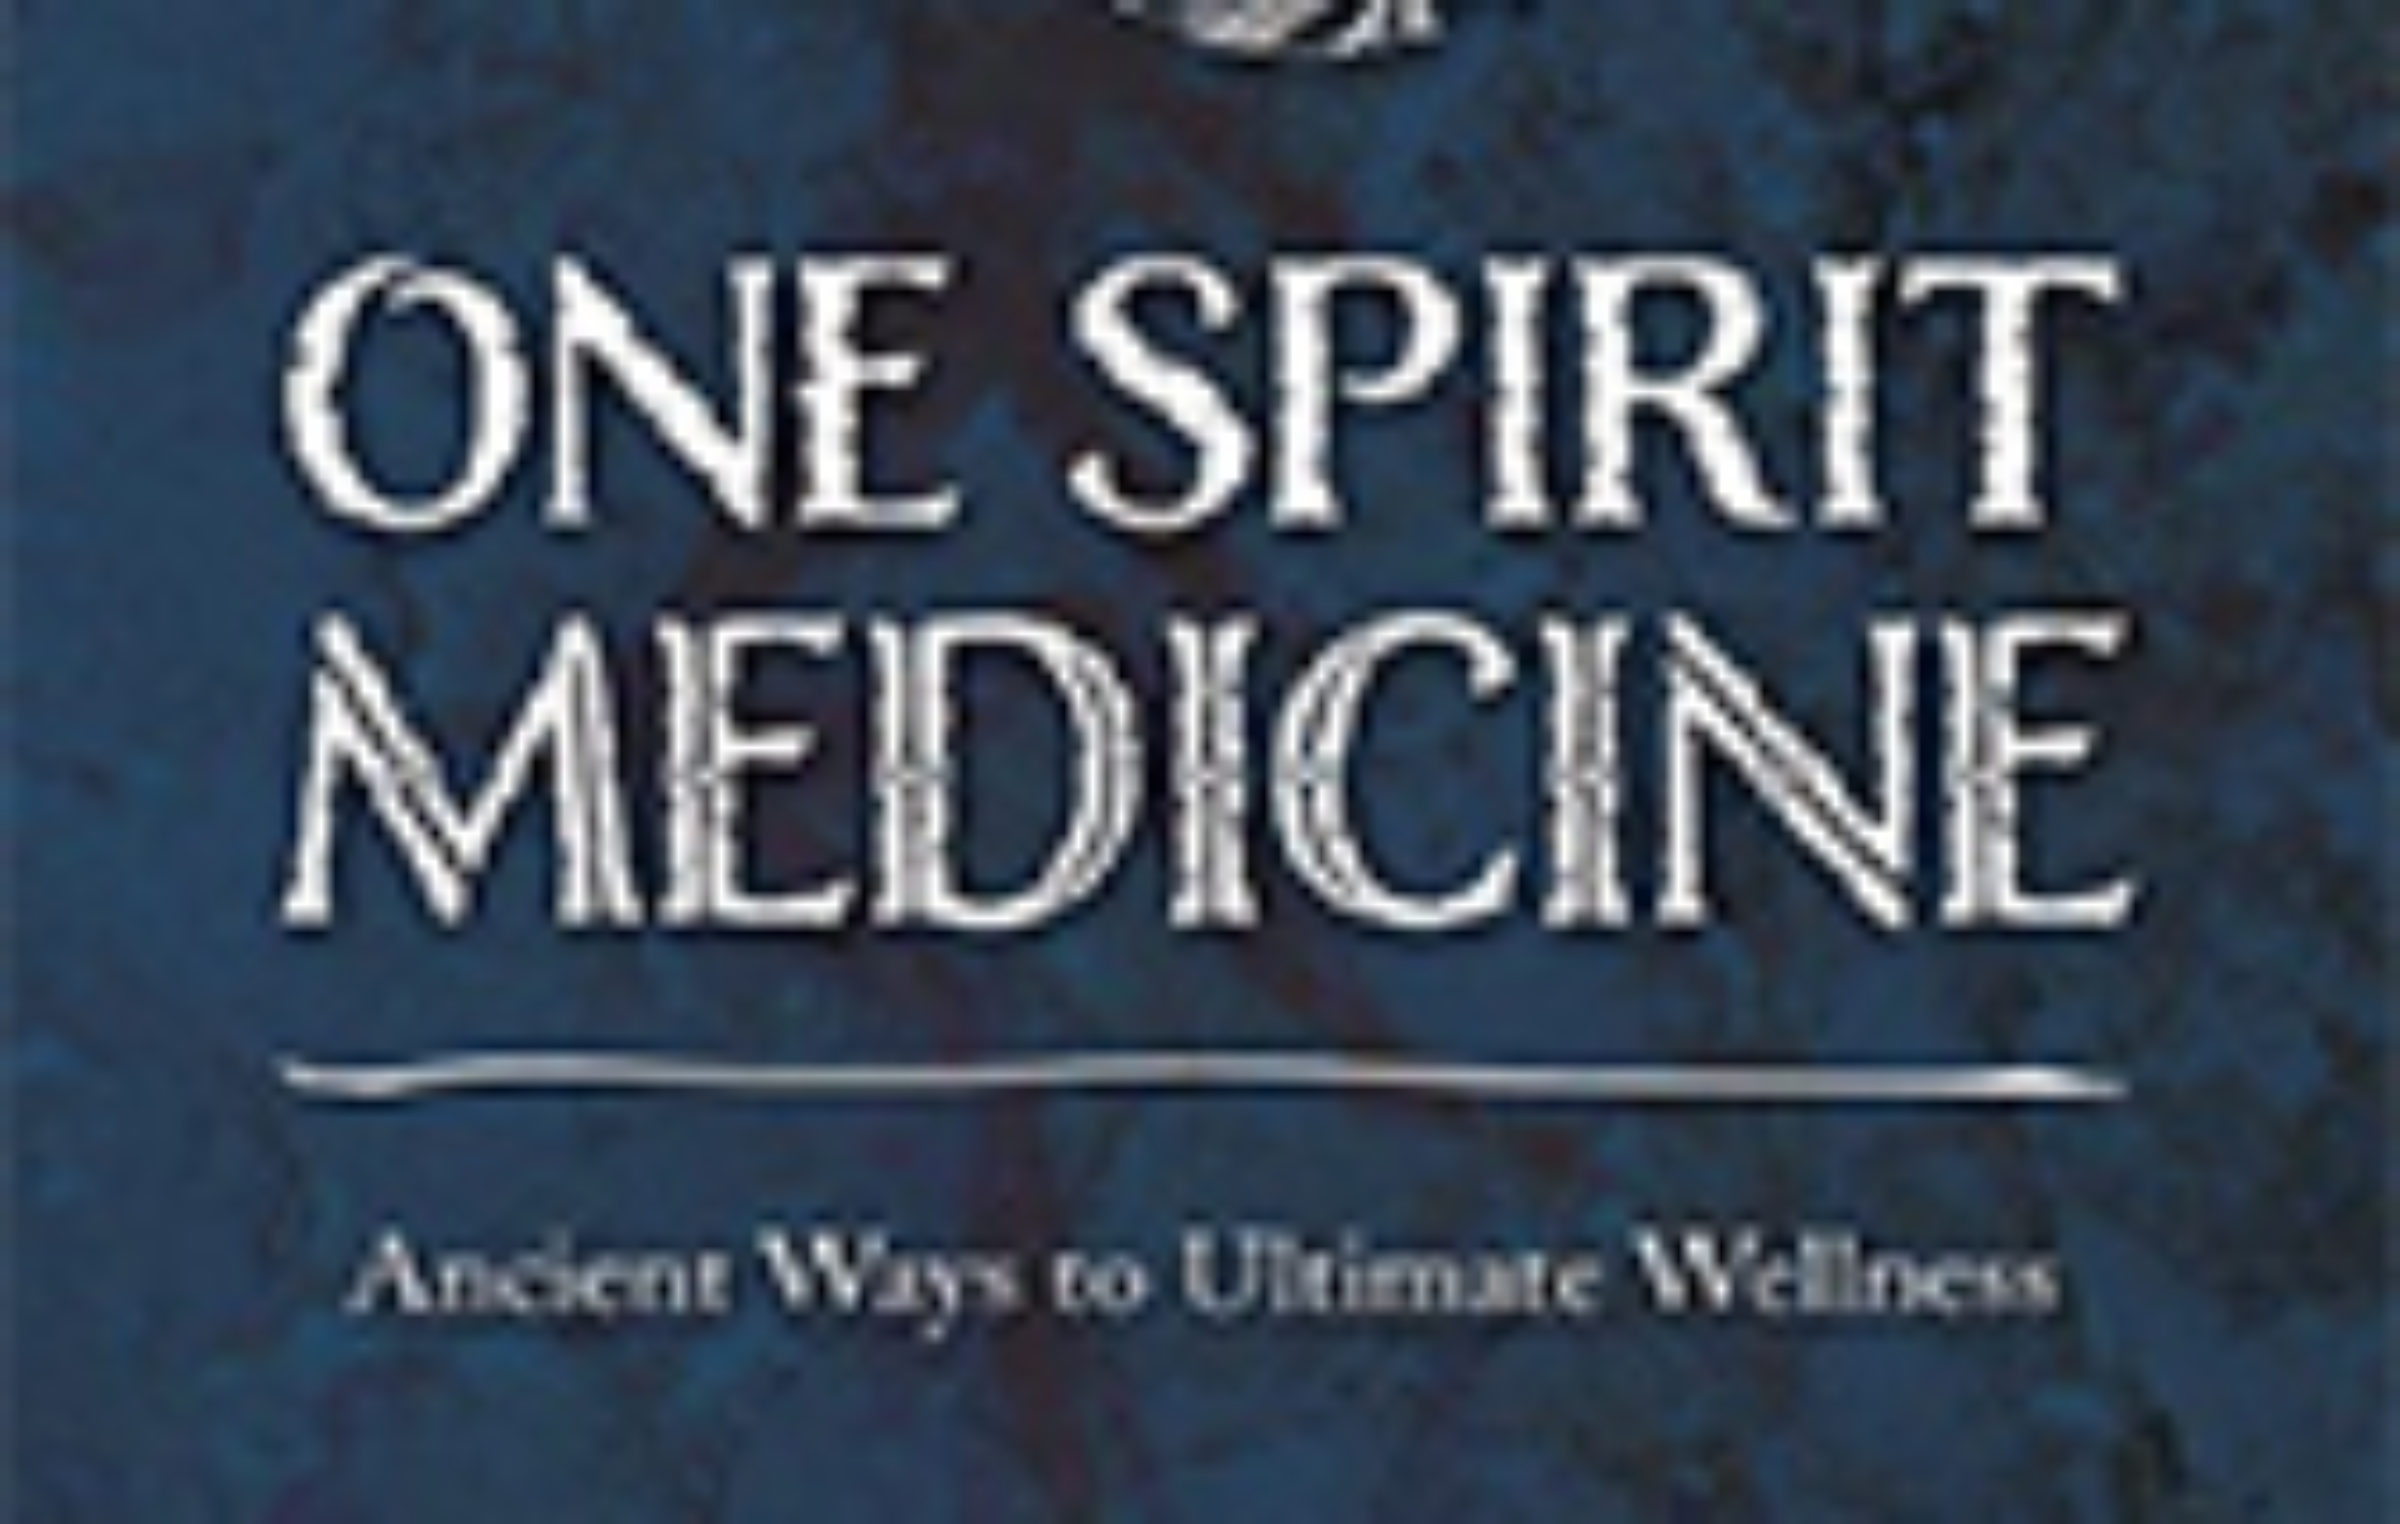 reviews of one spirit medicine